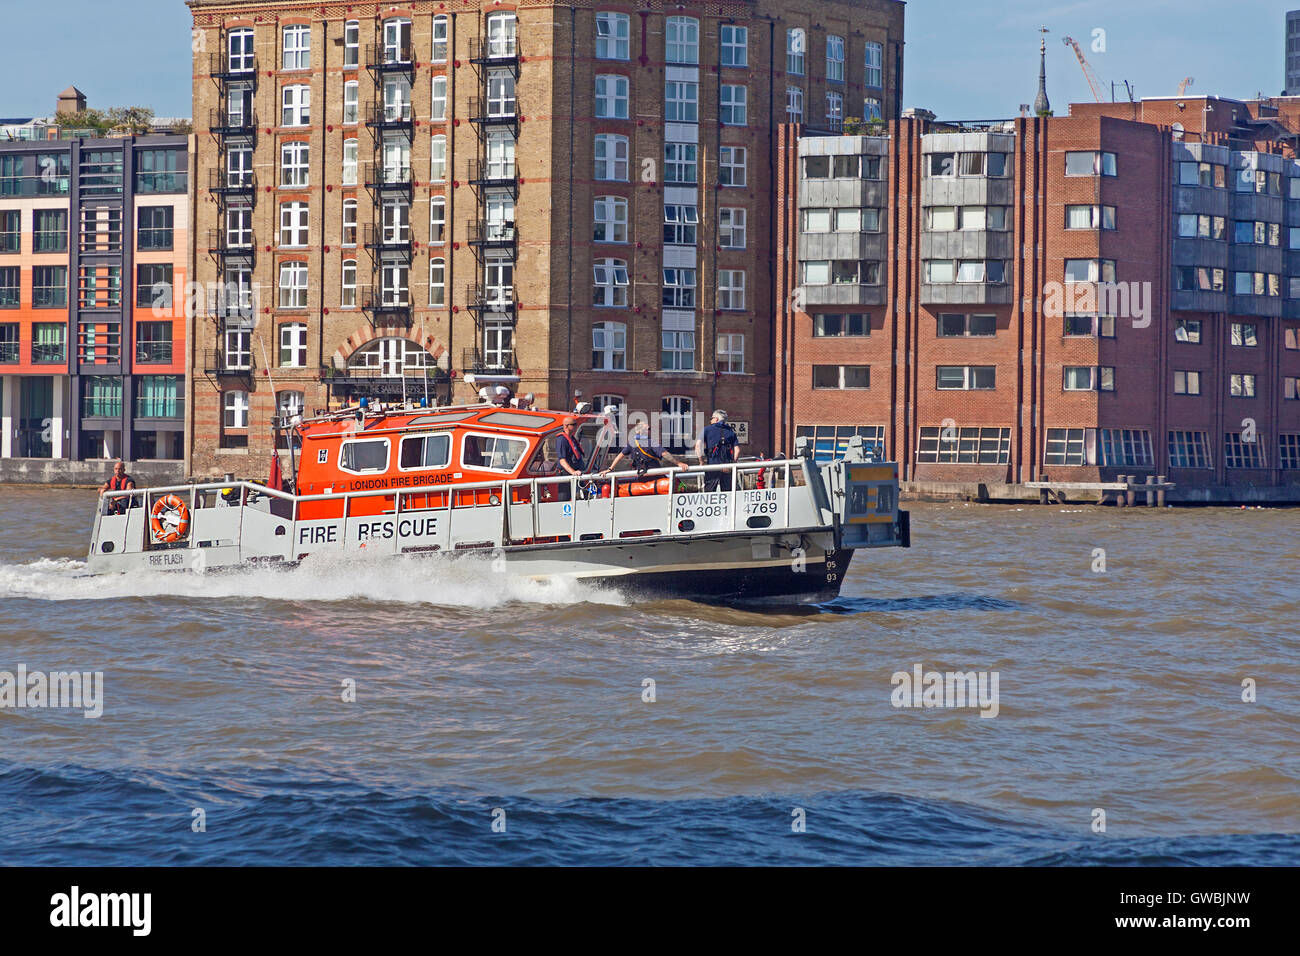 Ein Feuerwehr-Schiff die Londoner Feuerwehr, flussabwärts auf der Themse zu beschleunigen Stockfoto